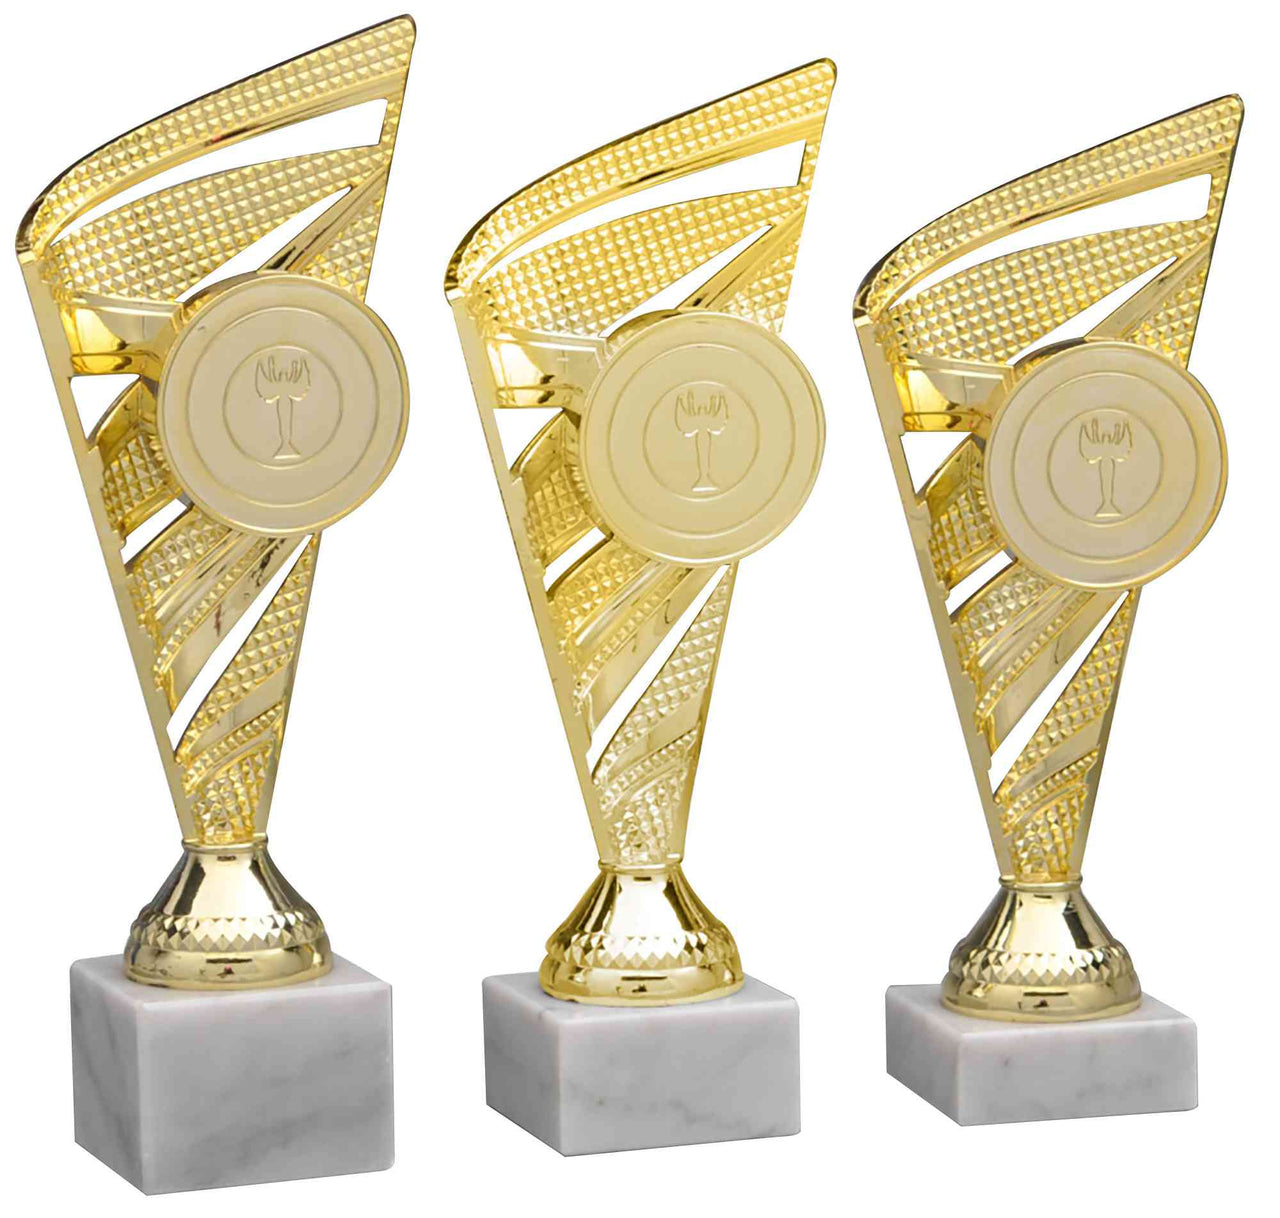 Drei goldene POMEKI Pokale Oberursel 3- er Pokalserie 218 mm - 240 mm PK758880-3-E50 auf einem weißen Hintergrund.